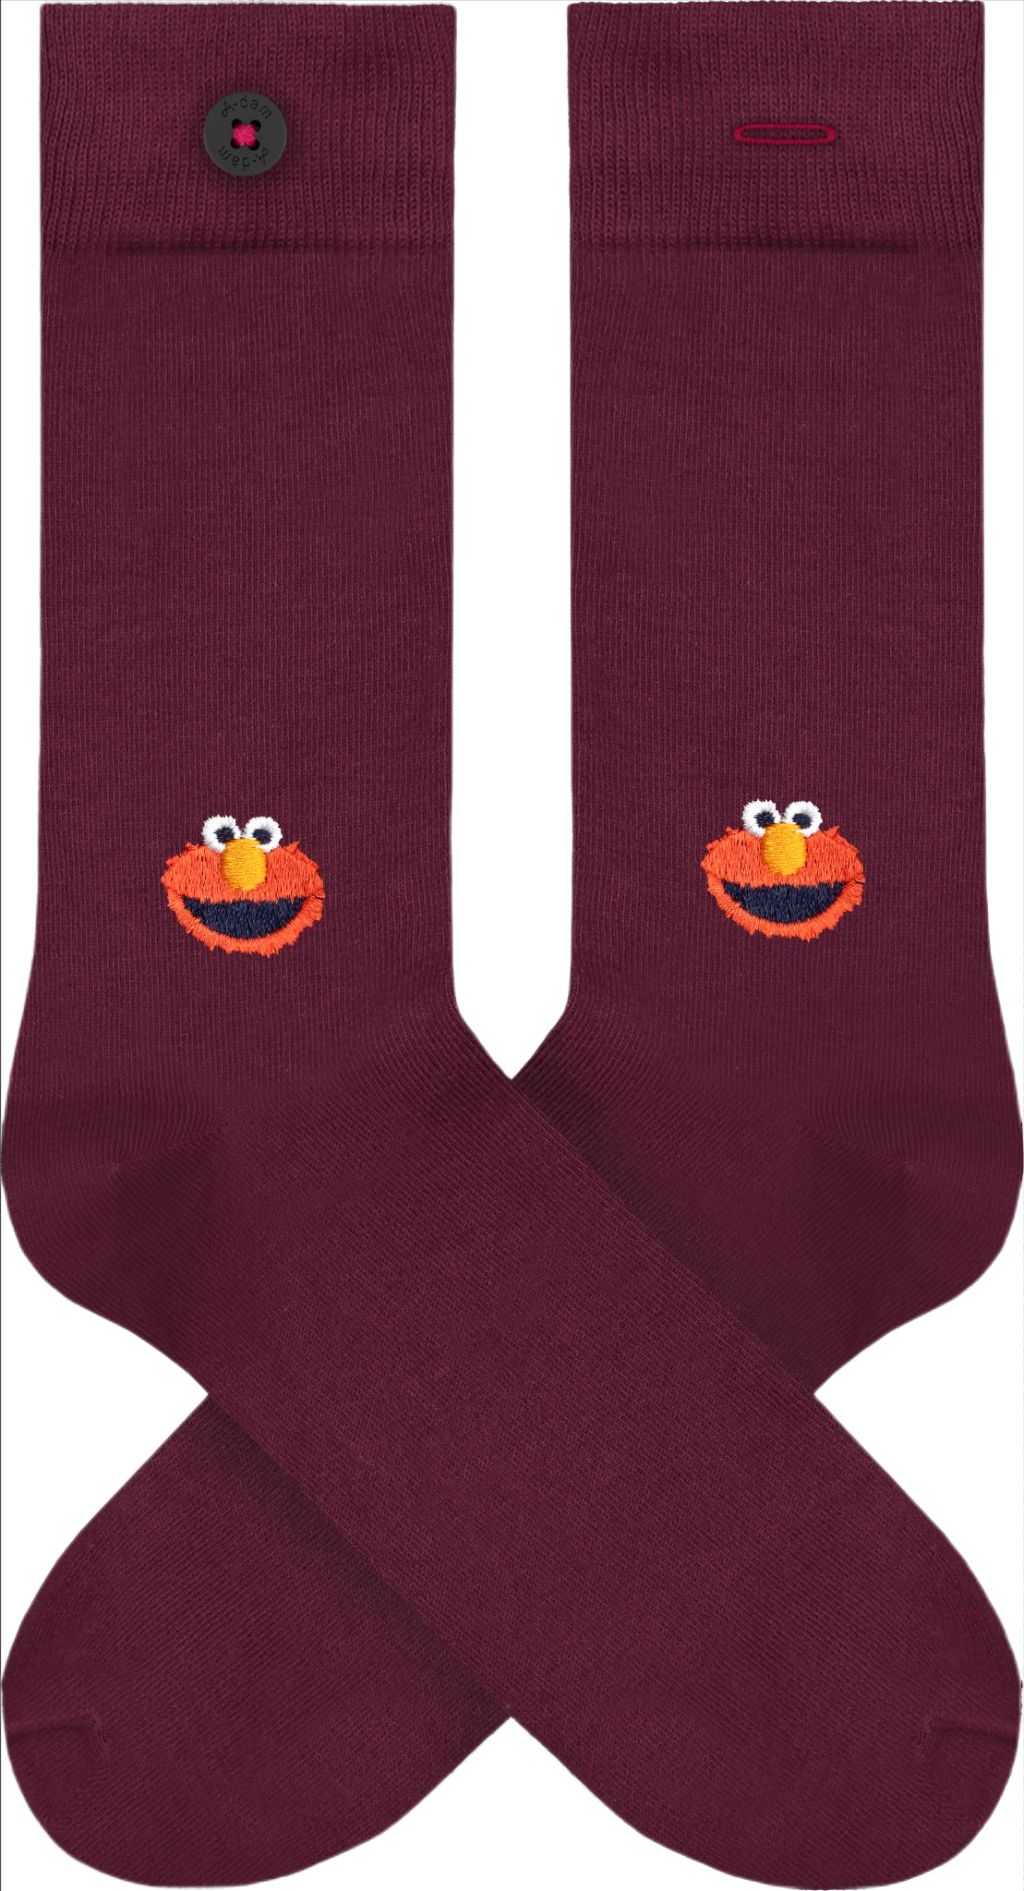 Elmo - Socks